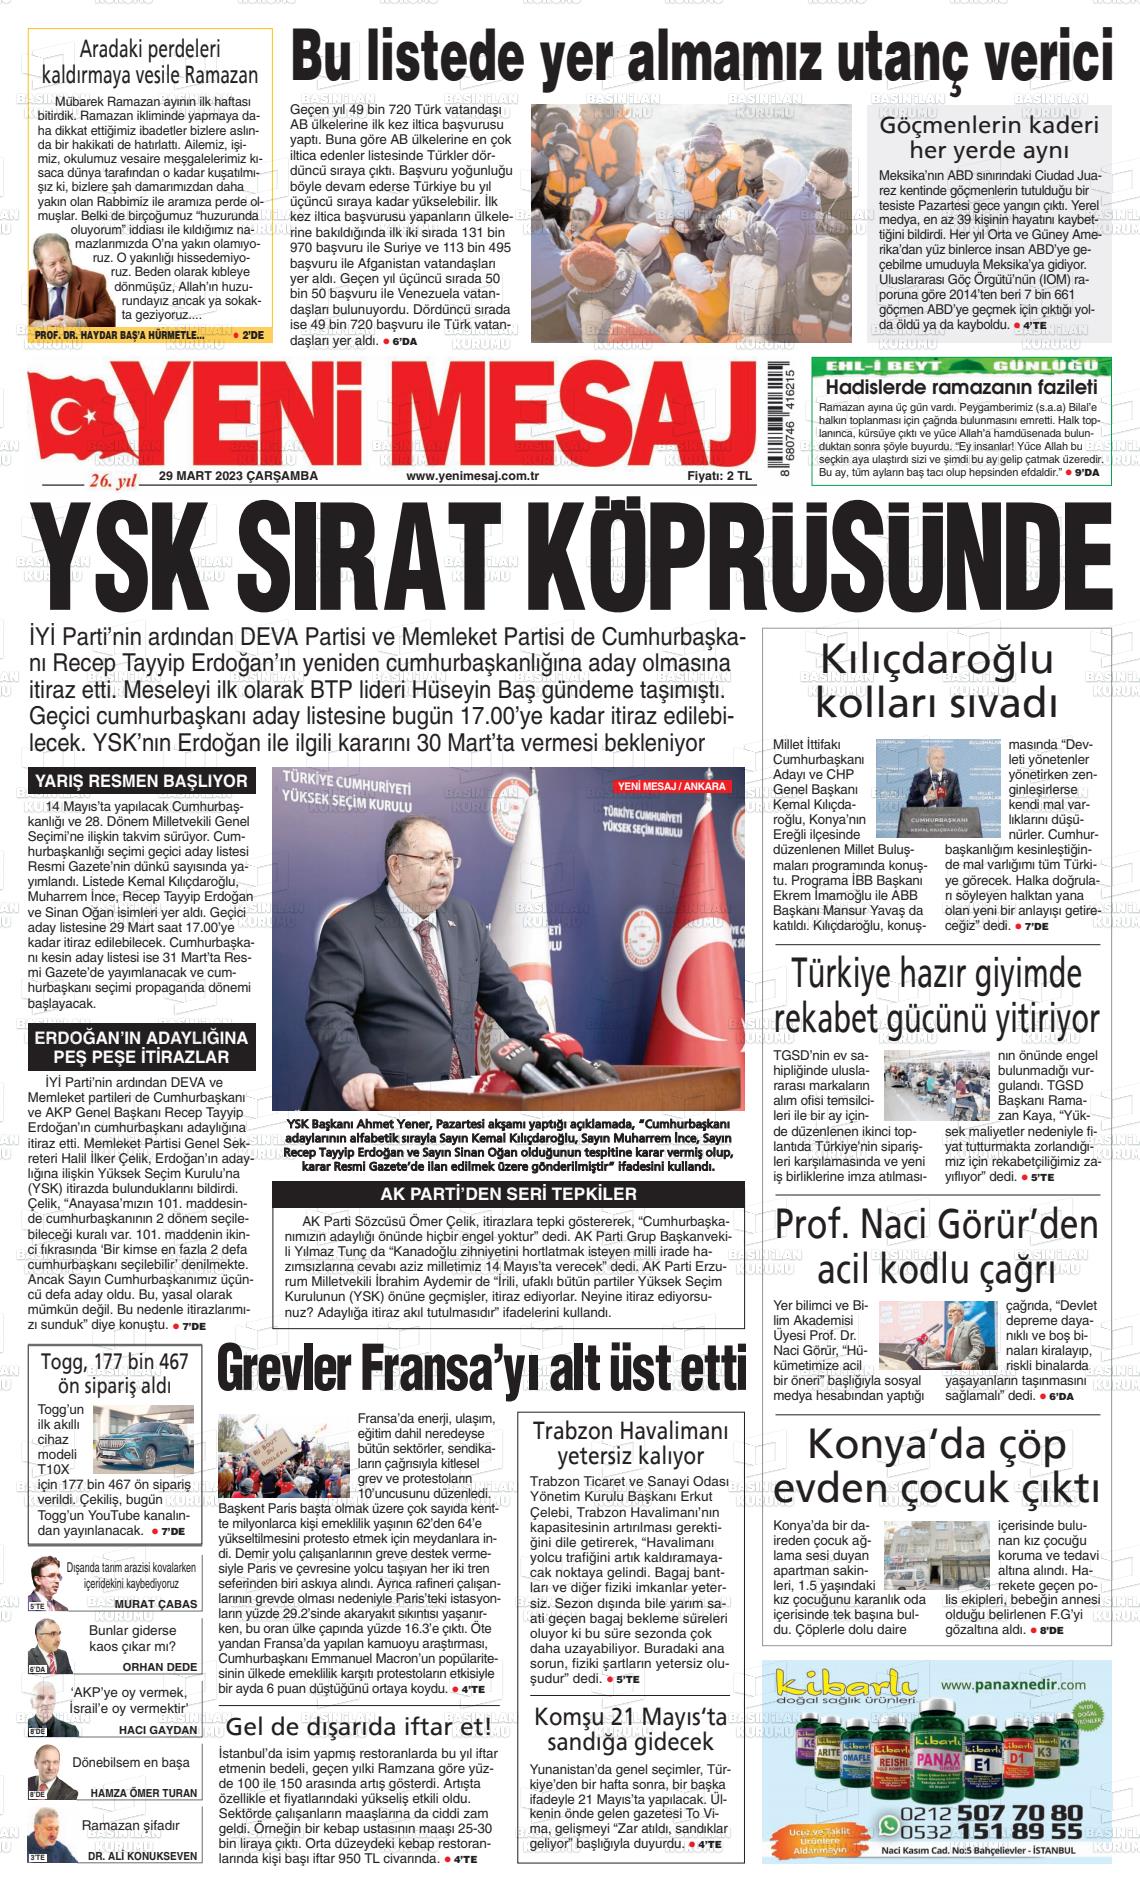 29 Mart 2023 Yeni Mesaj Gazete Manşeti